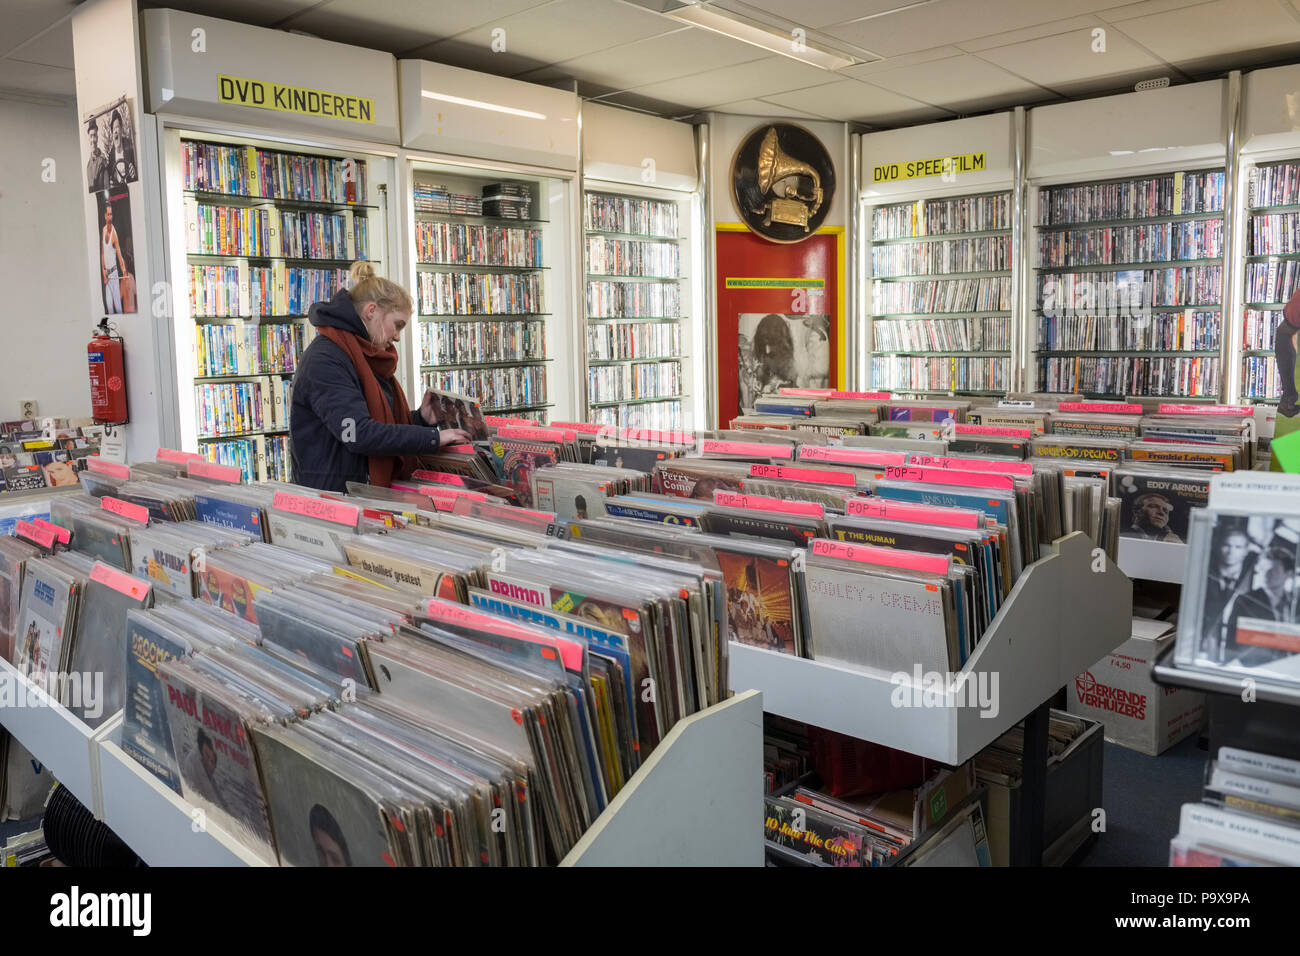 Jeune femme parcourt les disques vinyles et les albums de racks dans un magasin de disques et DVD store intérieur, Amsterdam, Pays-Bas, Hollande, Europe Banque D'Images